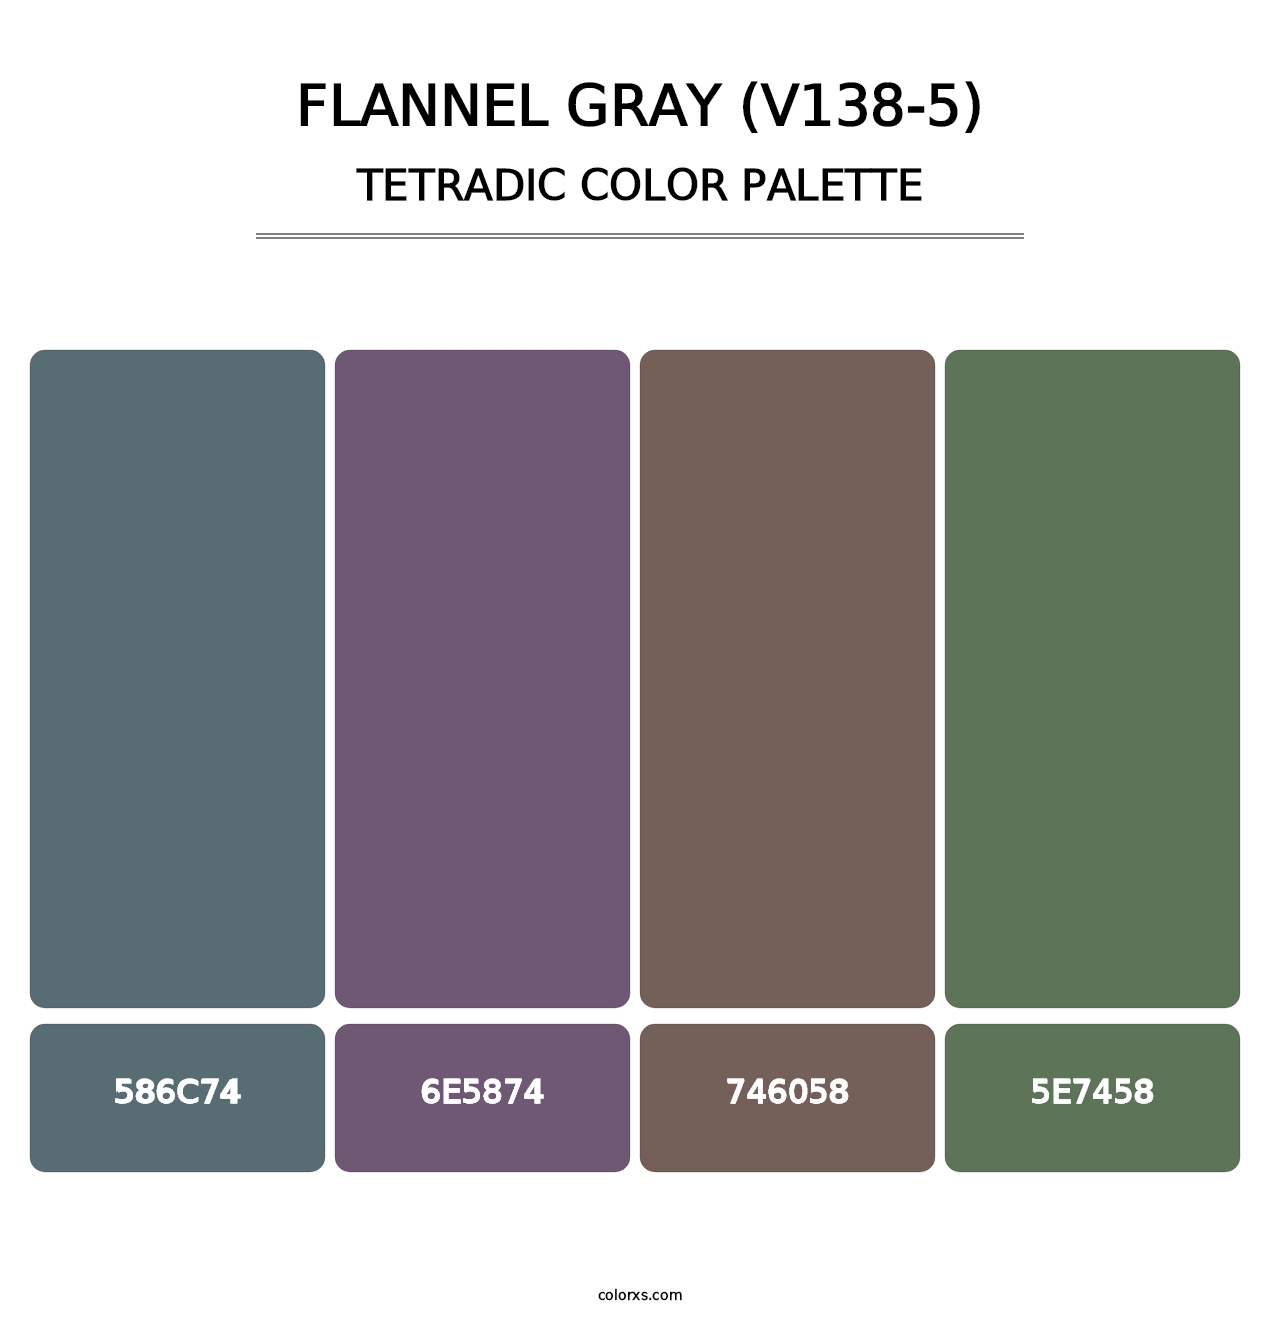 Flannel Gray (V138-5) - Tetradic Color Palette